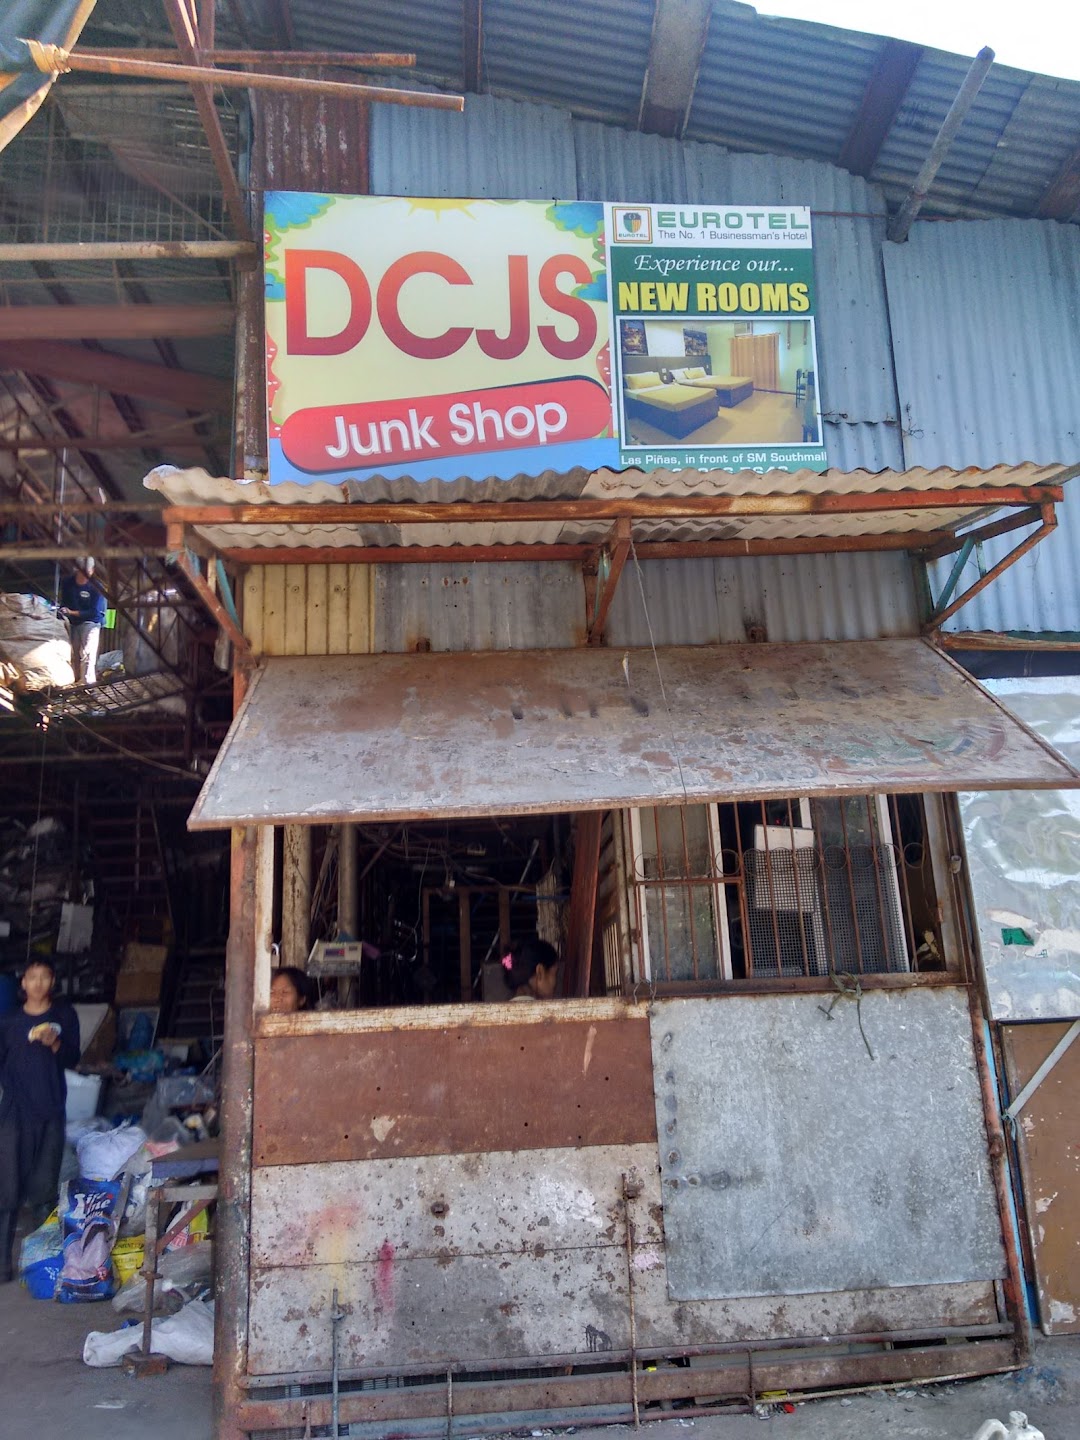 DCJS Junk Shop